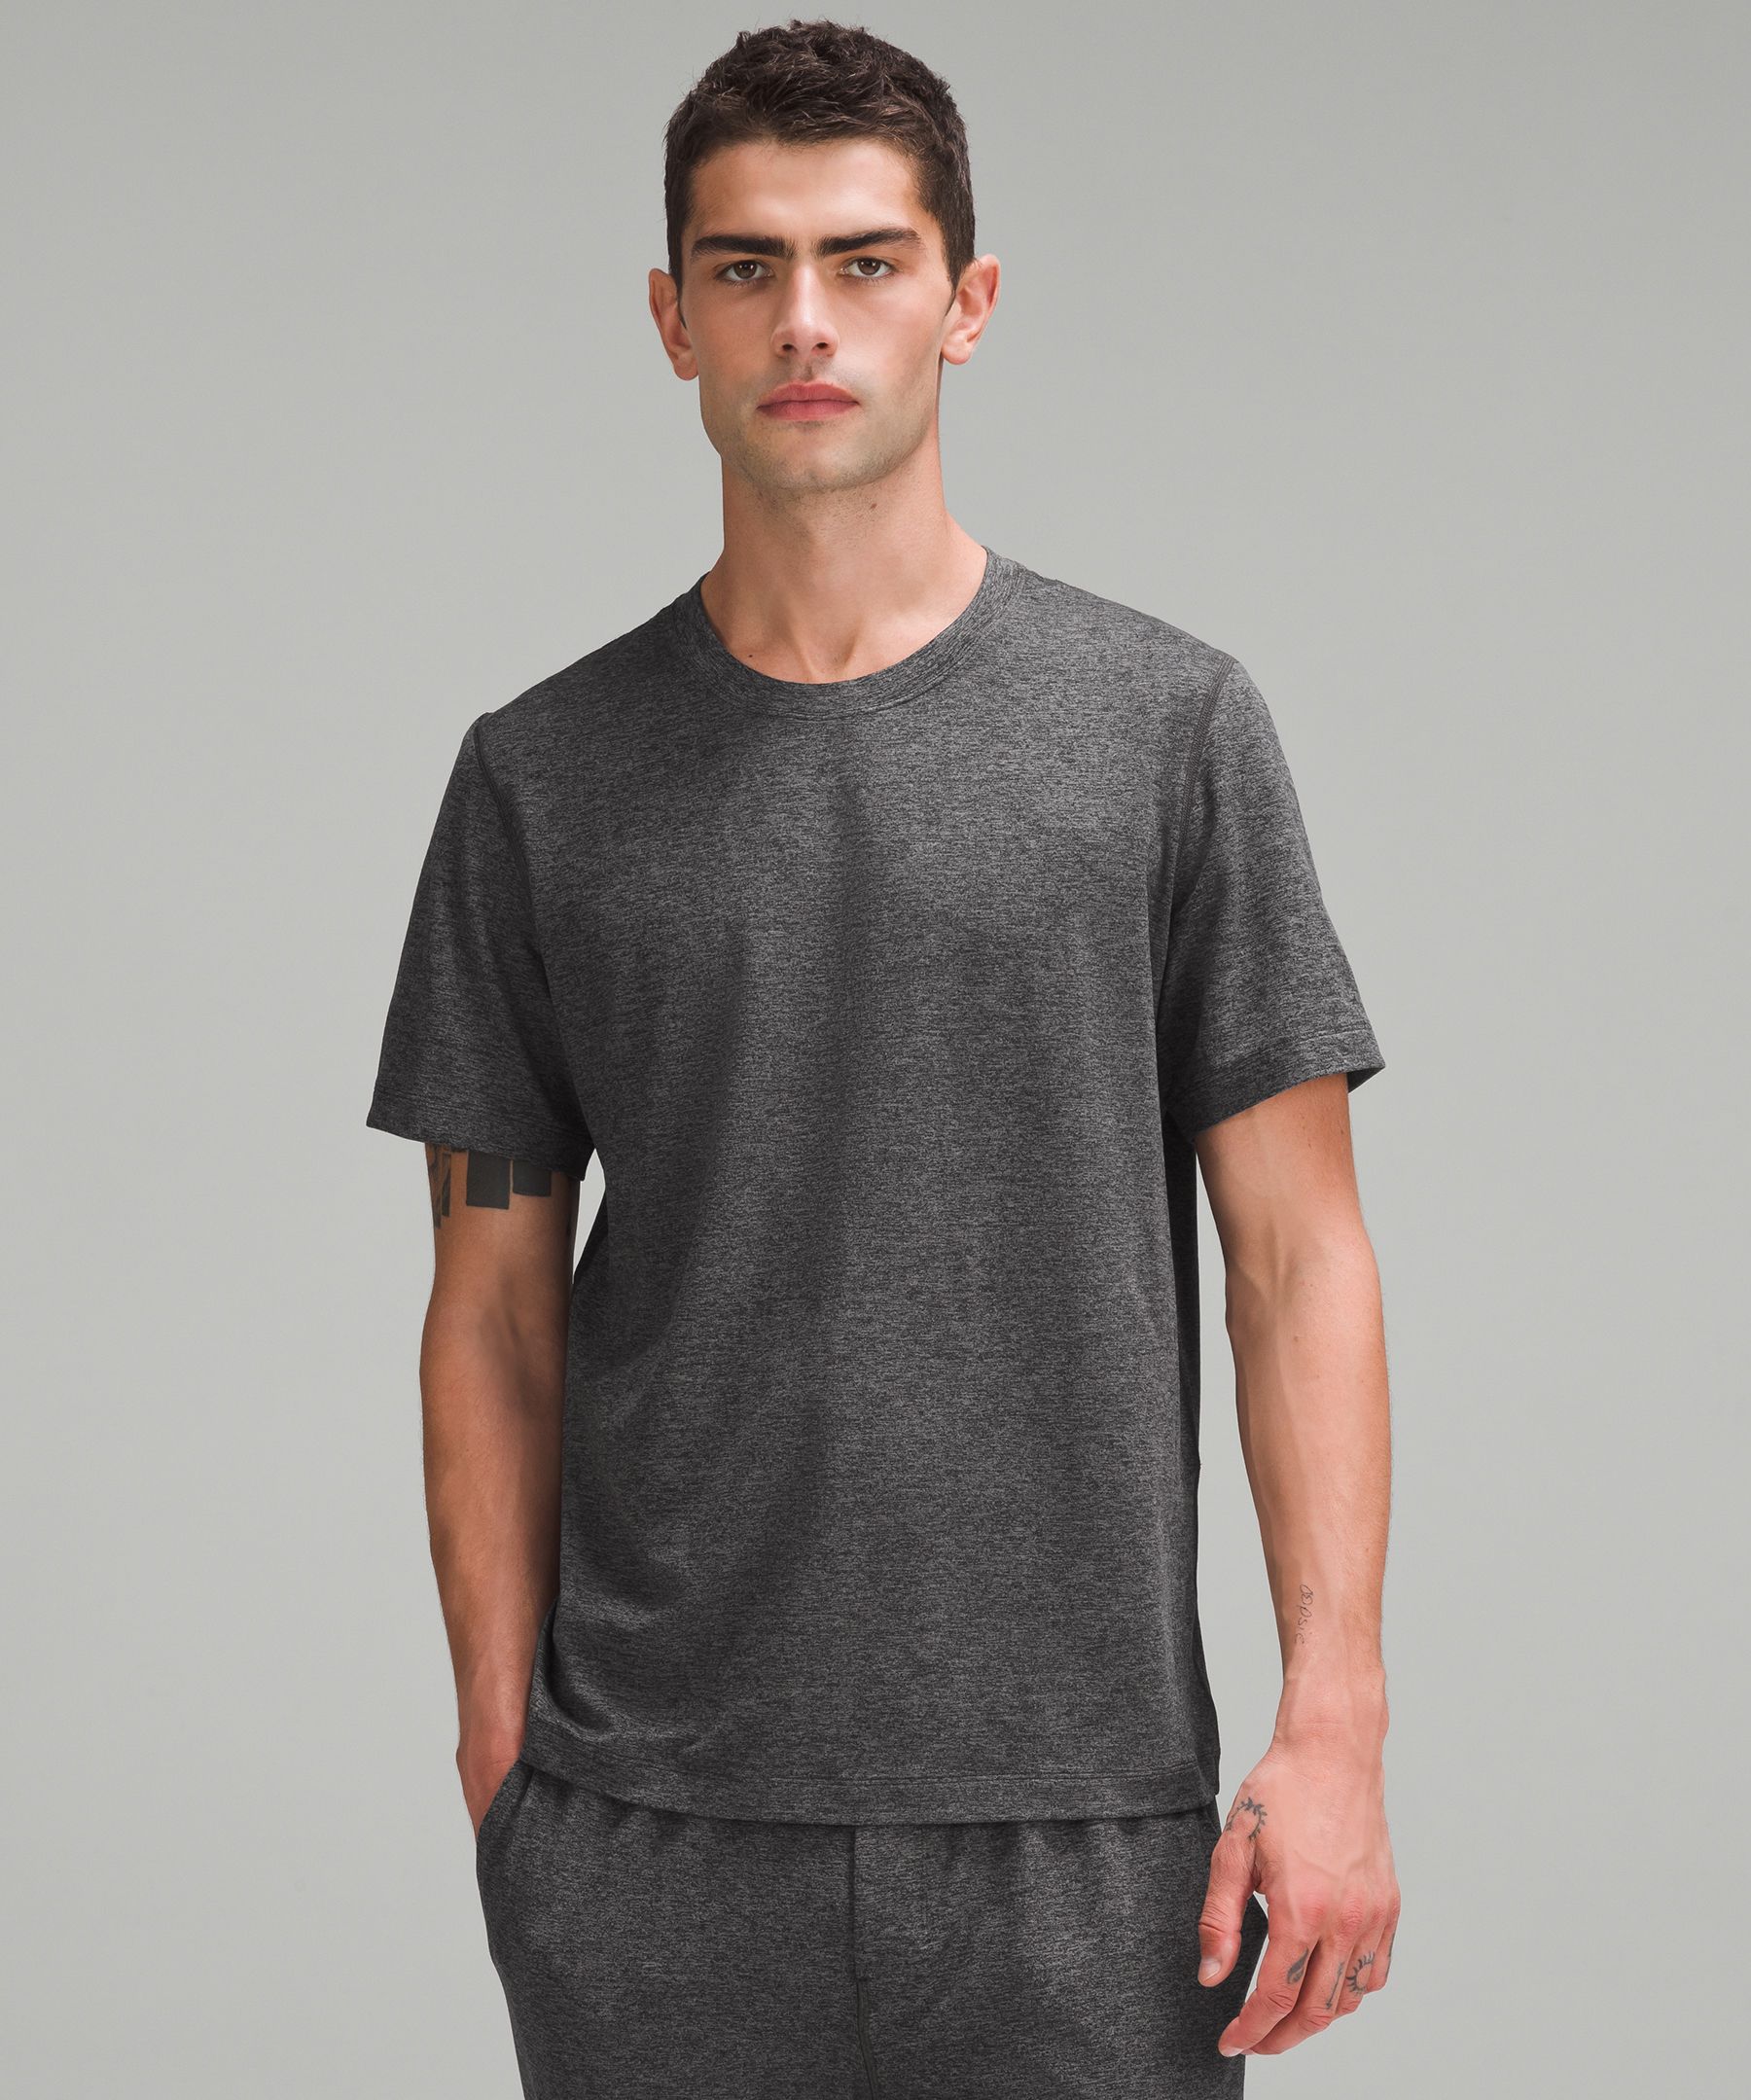 Soft Jersey Short-Sleeve Shirt, Men's Short Sleeve Shirts & Tee's